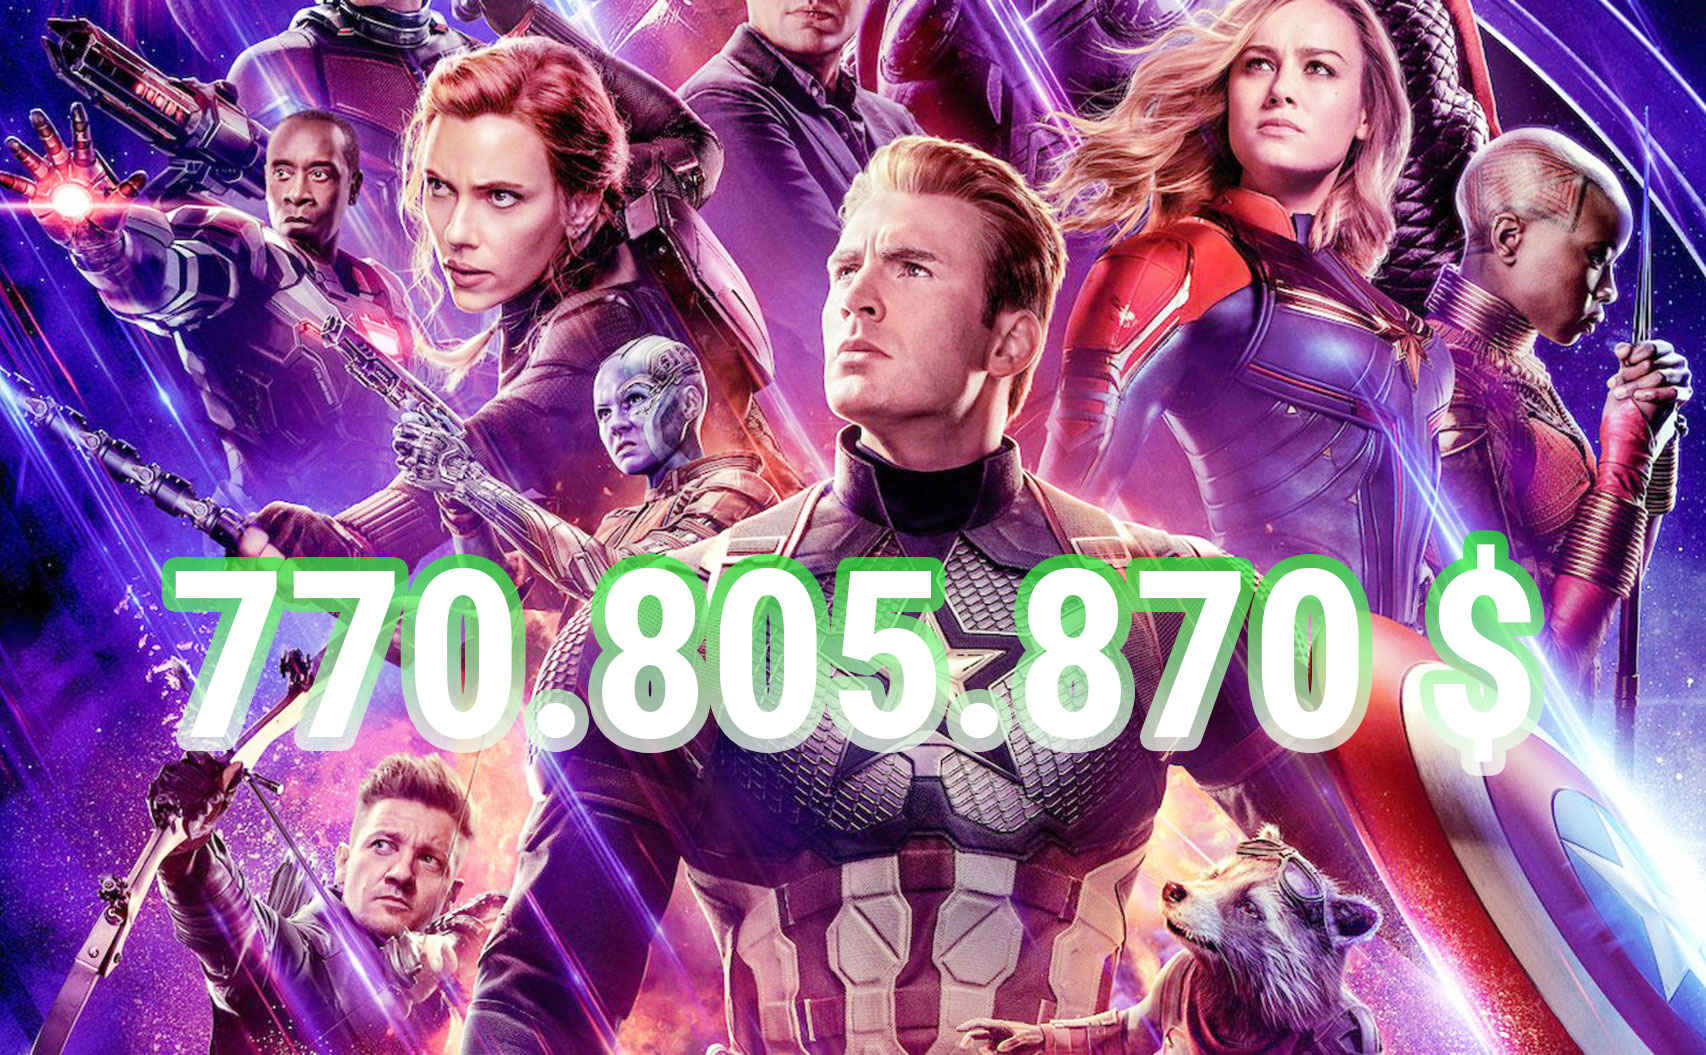 Avengers Endgame vượt Avatar trở thành phim có doanh thu cao nhất lịch  sử